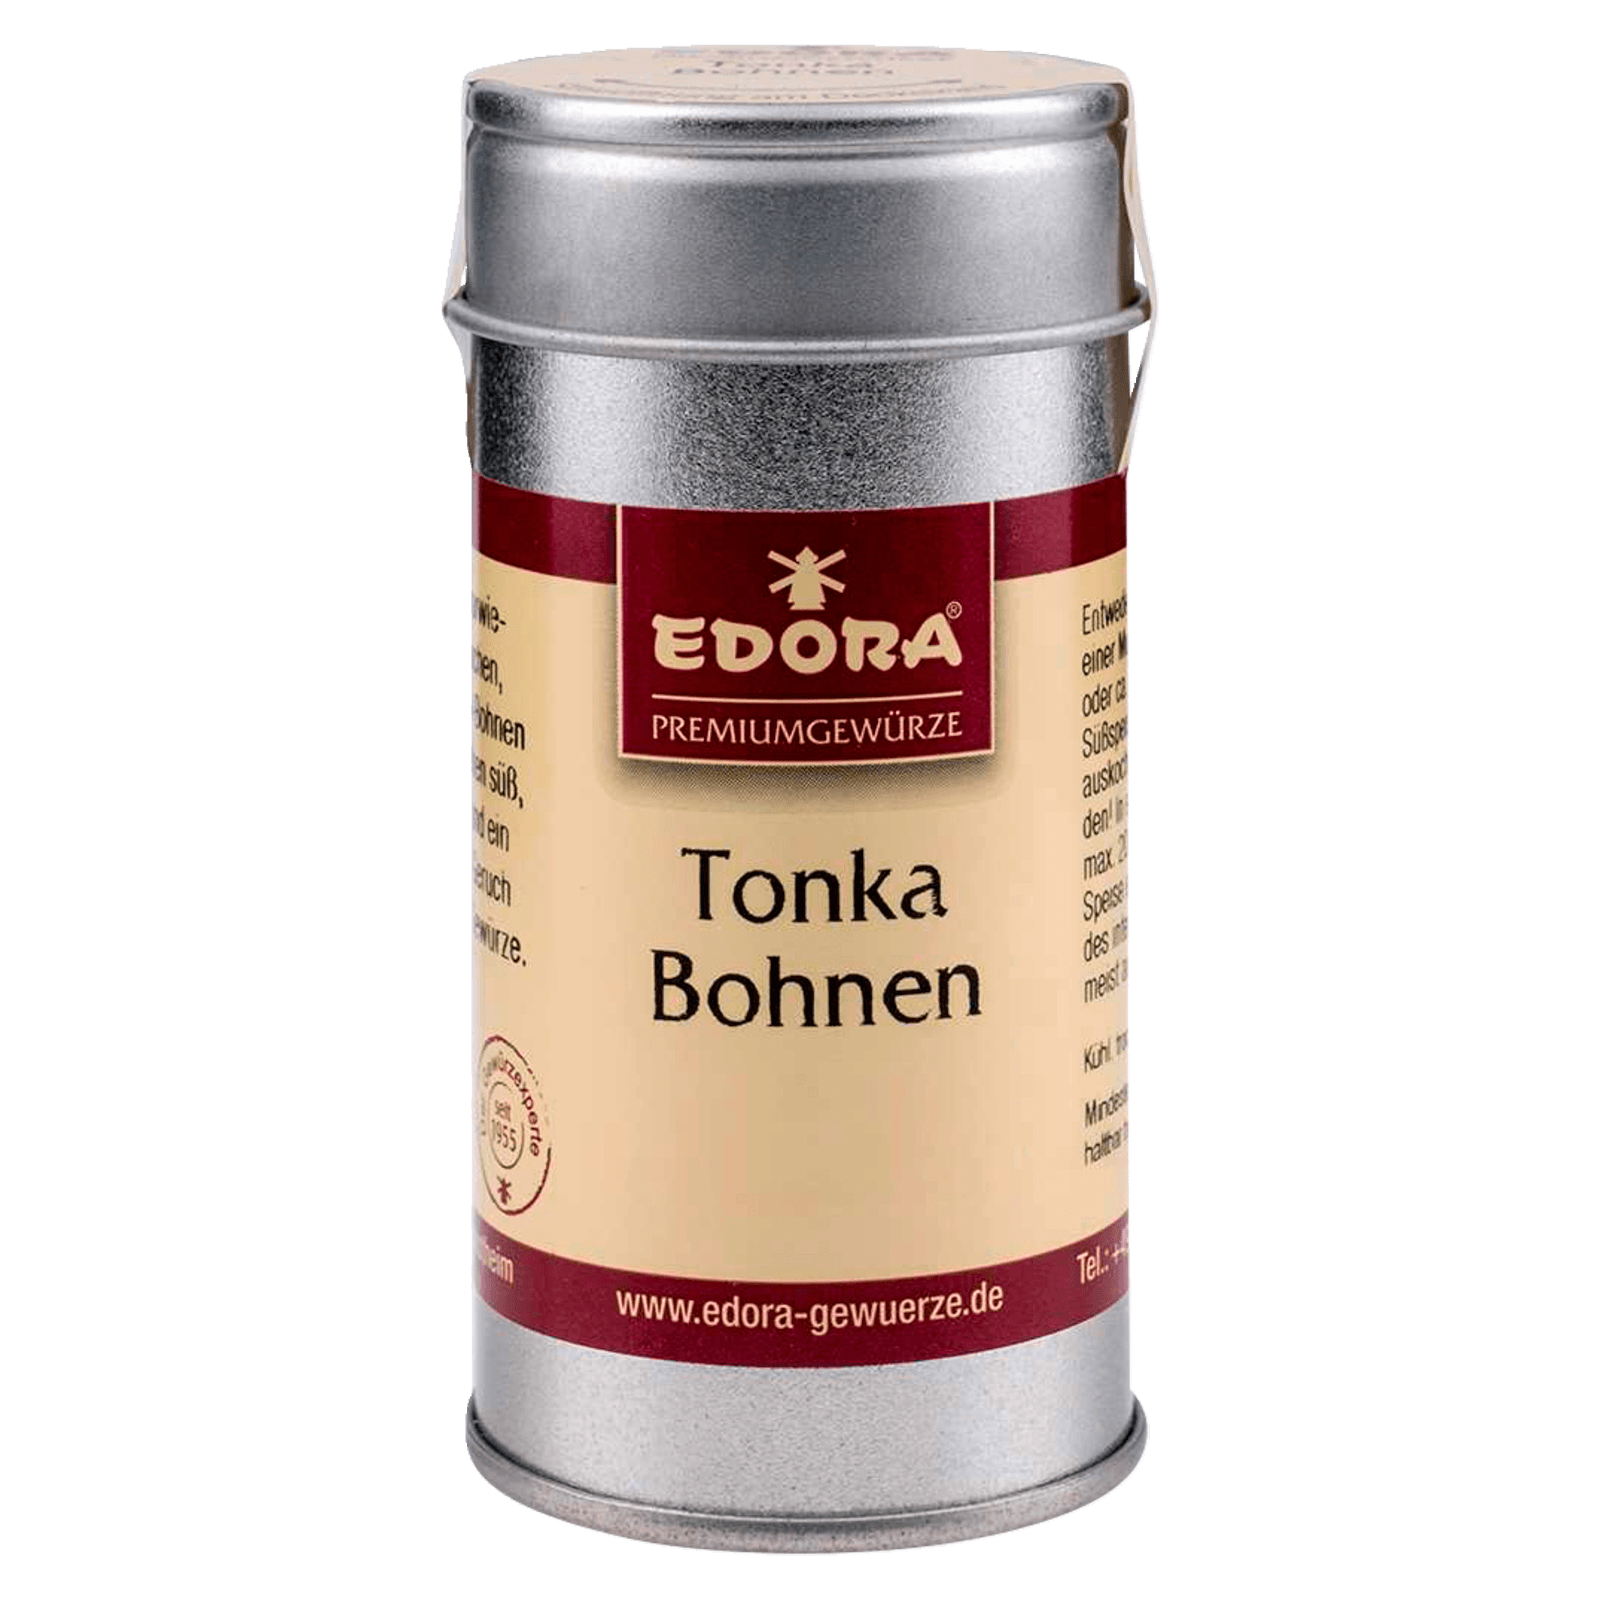 Edora Tonka Bohnen 35g bei REWE online bestellen!